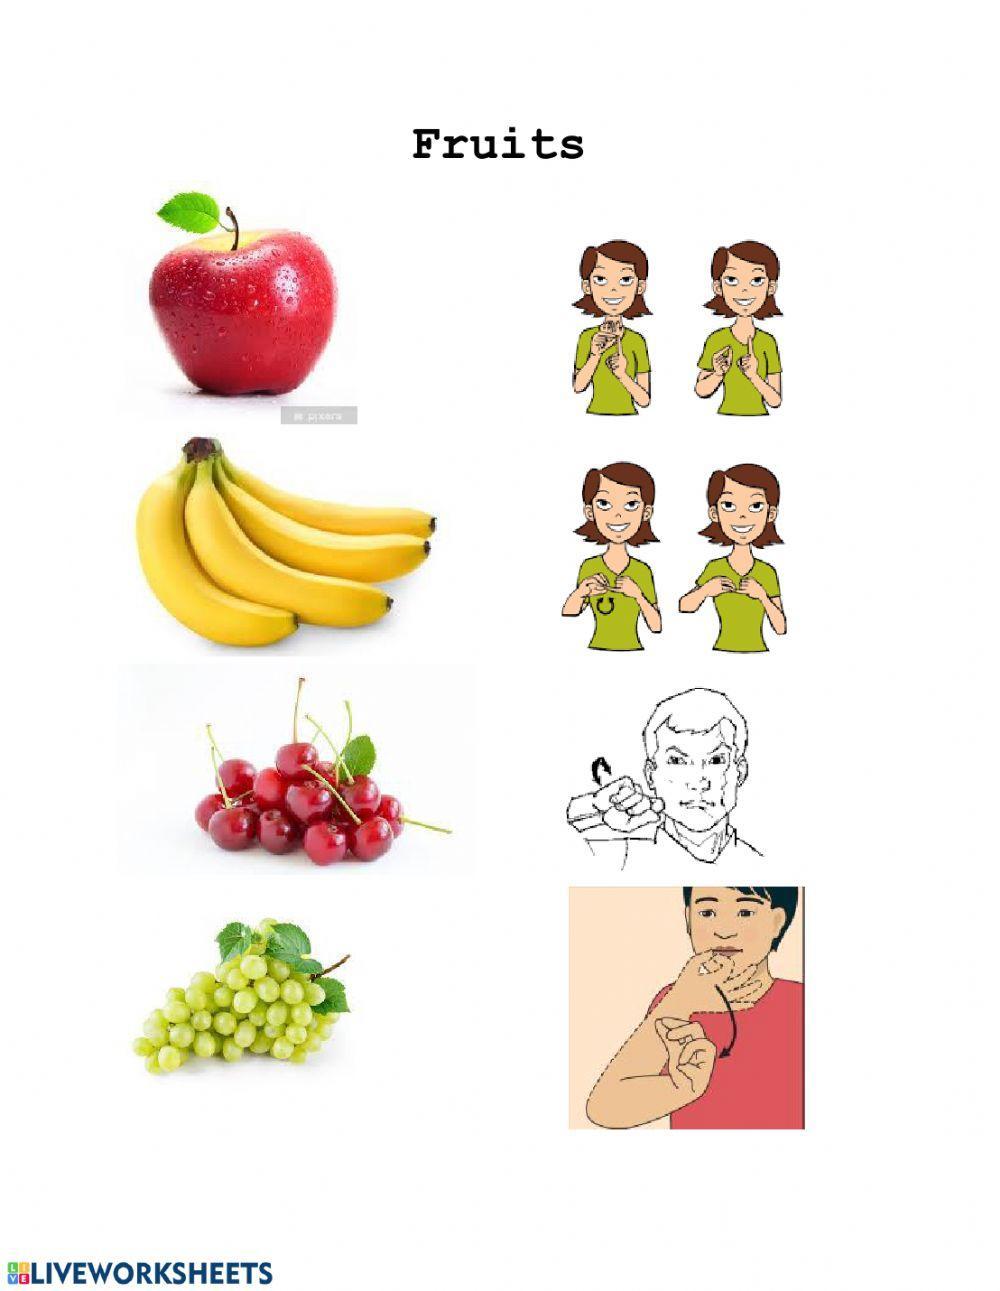 Fruits in ASL